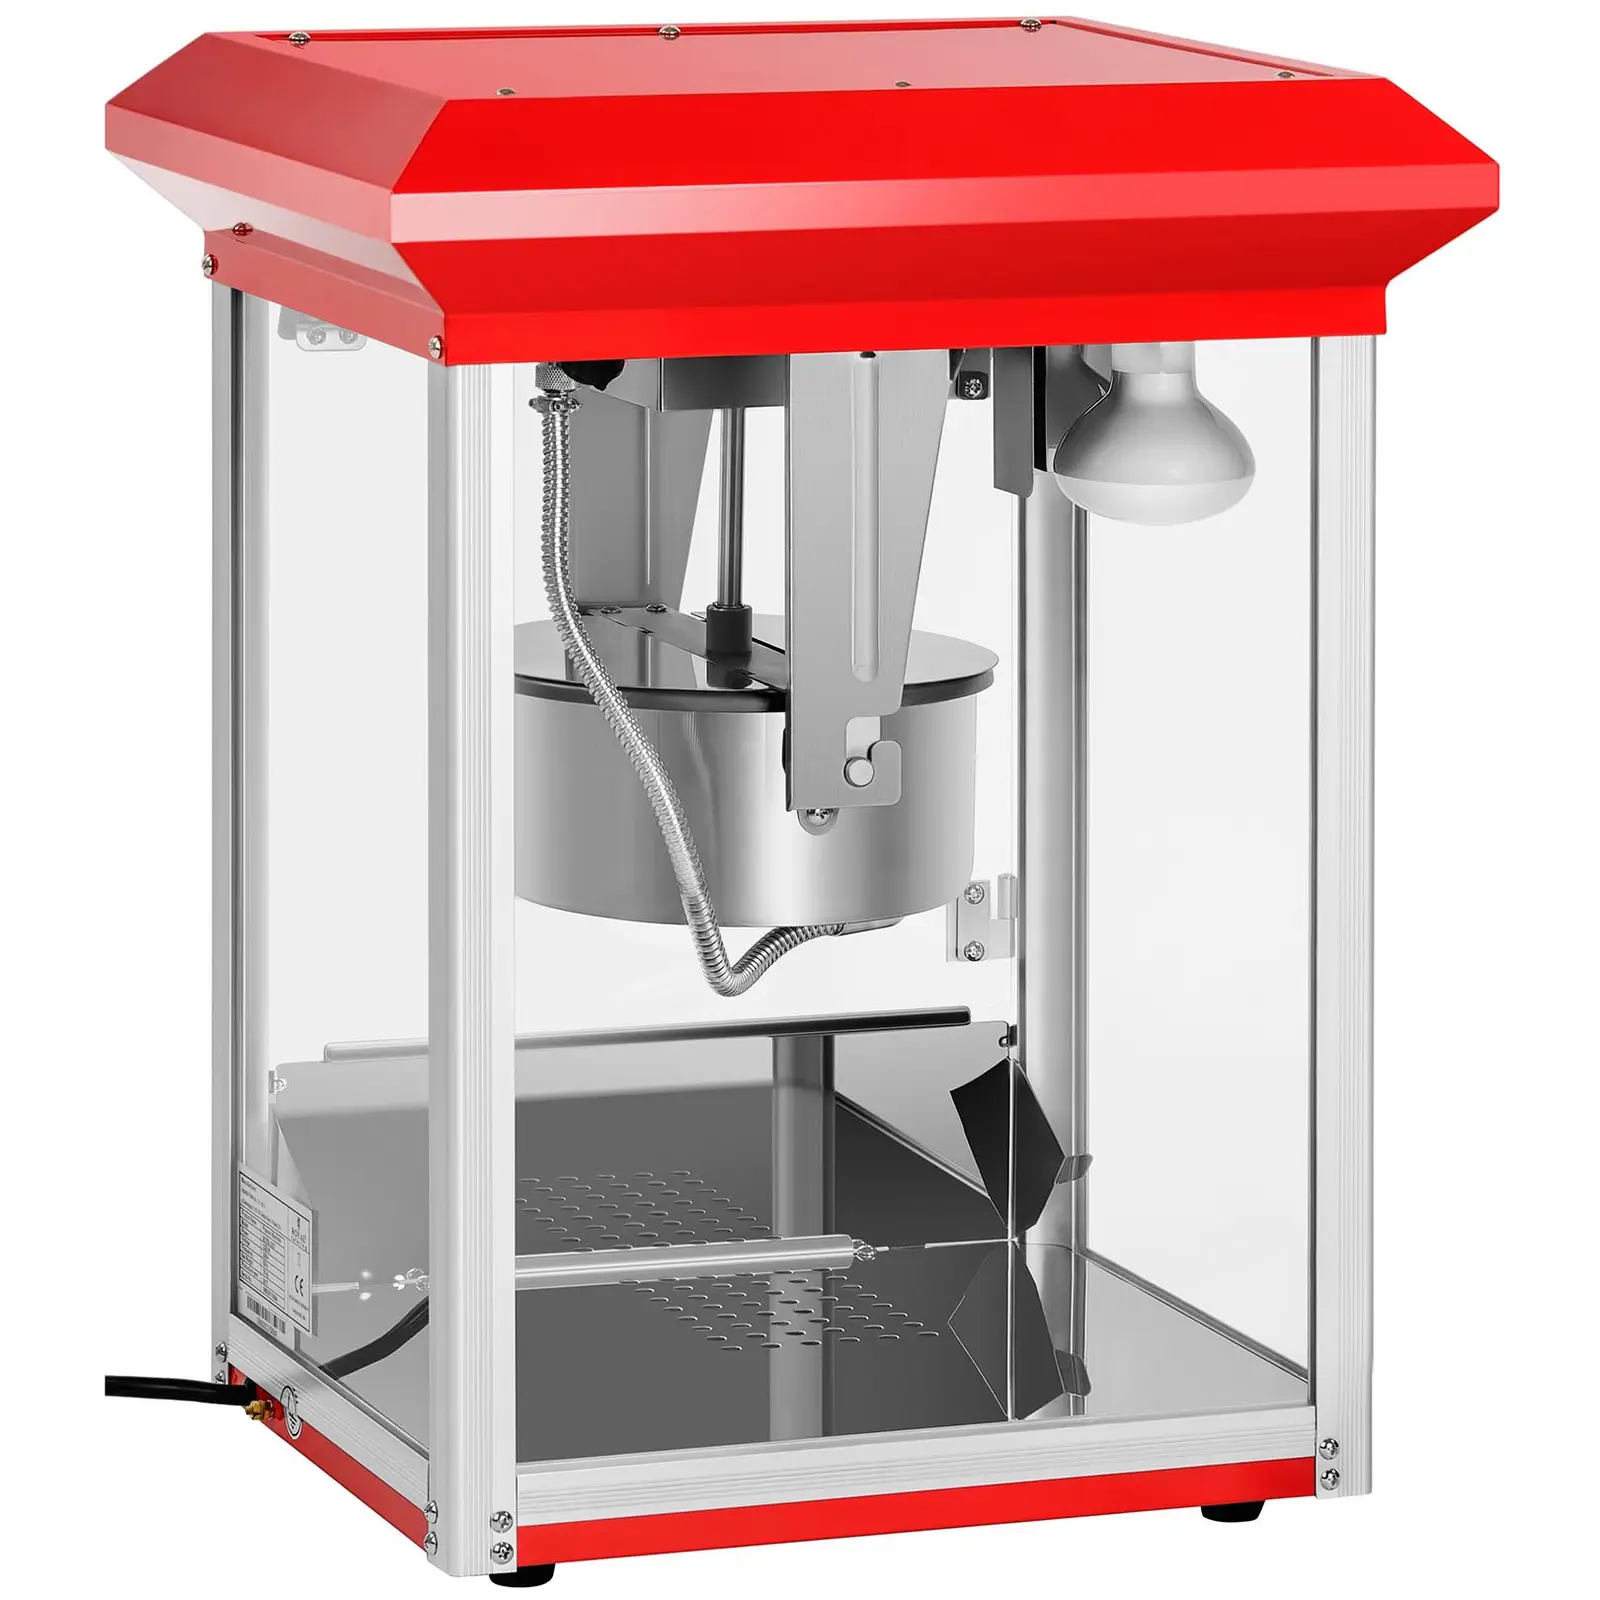 Machine à popcorn rouge - 8 oz